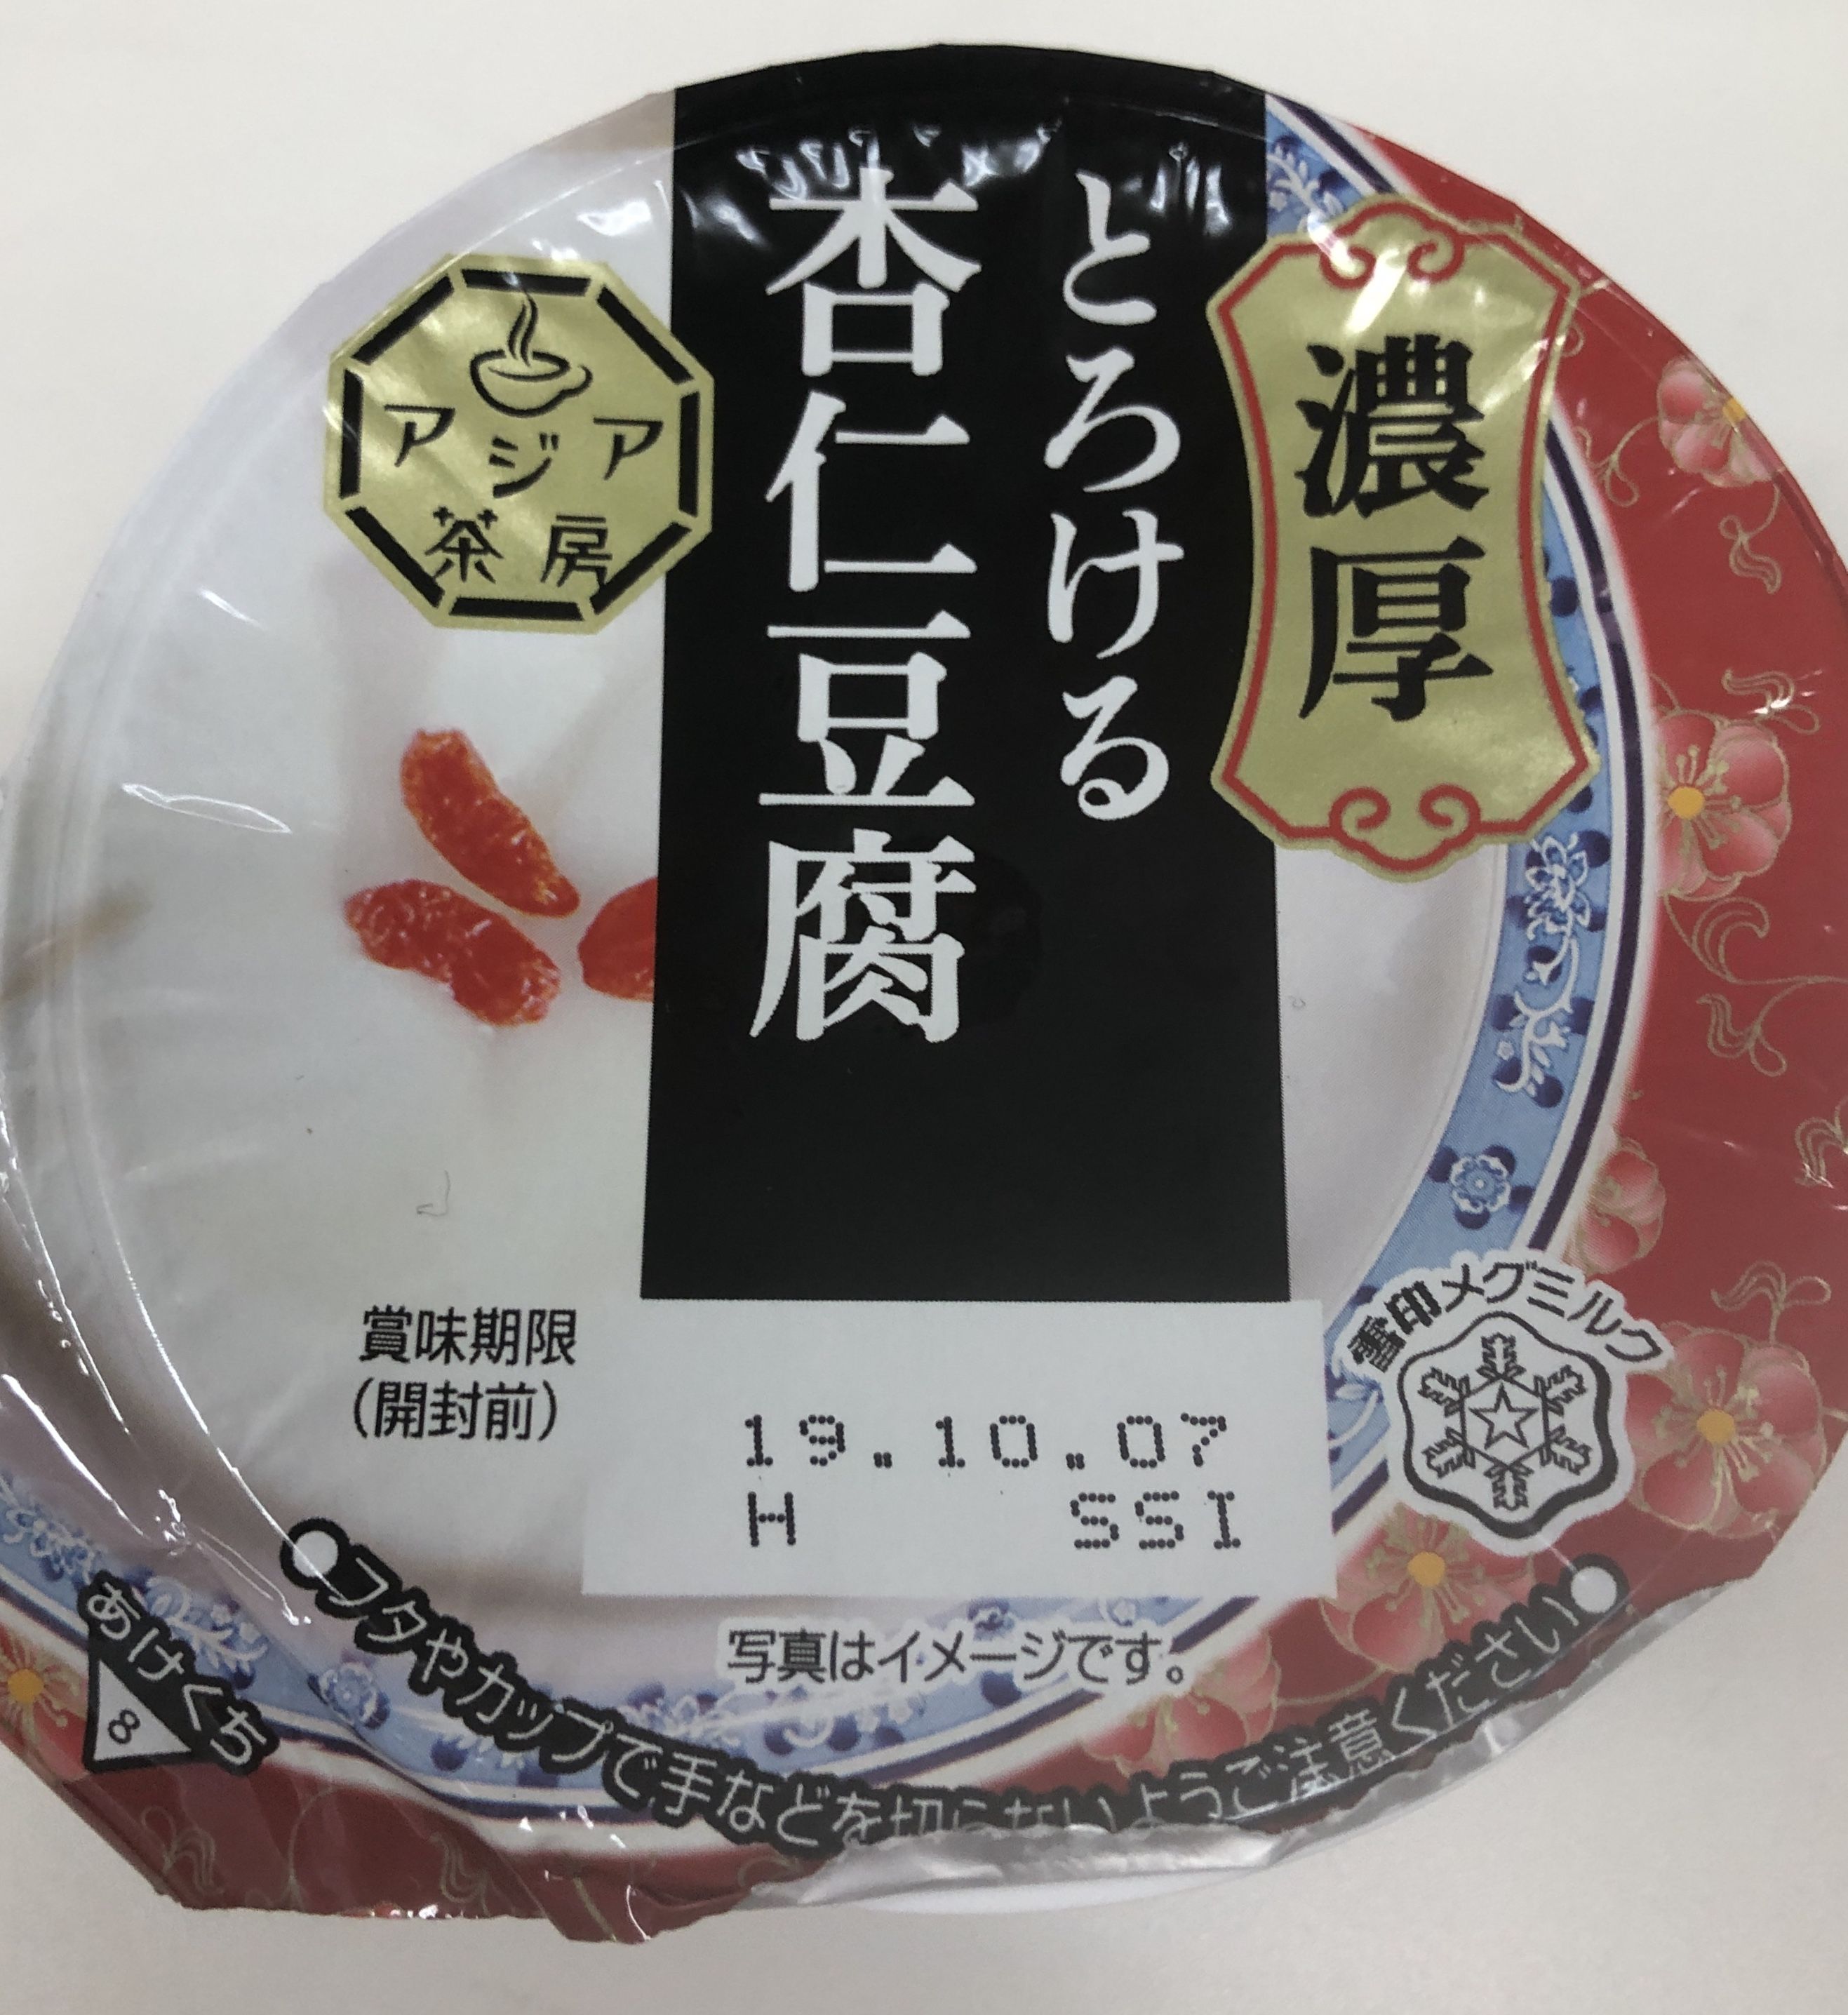 ランチデザート 濃厚とろける杏仁豆腐 ワーキングママの投資日記 楽天ブログ